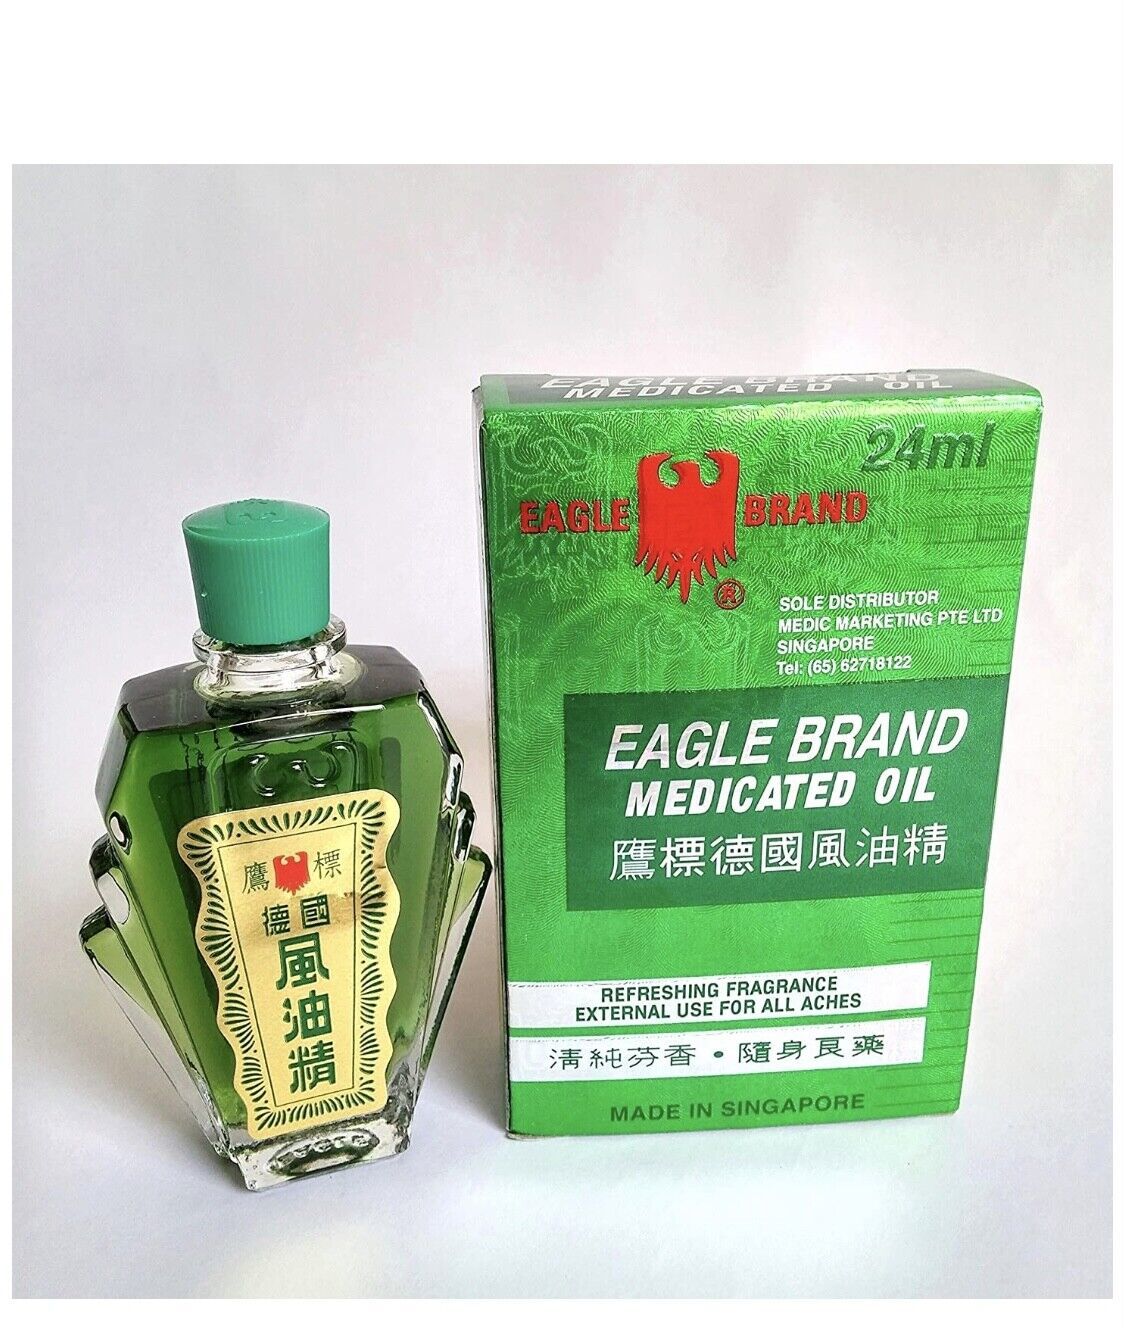 Primary image for Eagle Brand Medicated Oil 0.8 Oz - 24 ml Bottle x 12 bottles or  1 Dozen